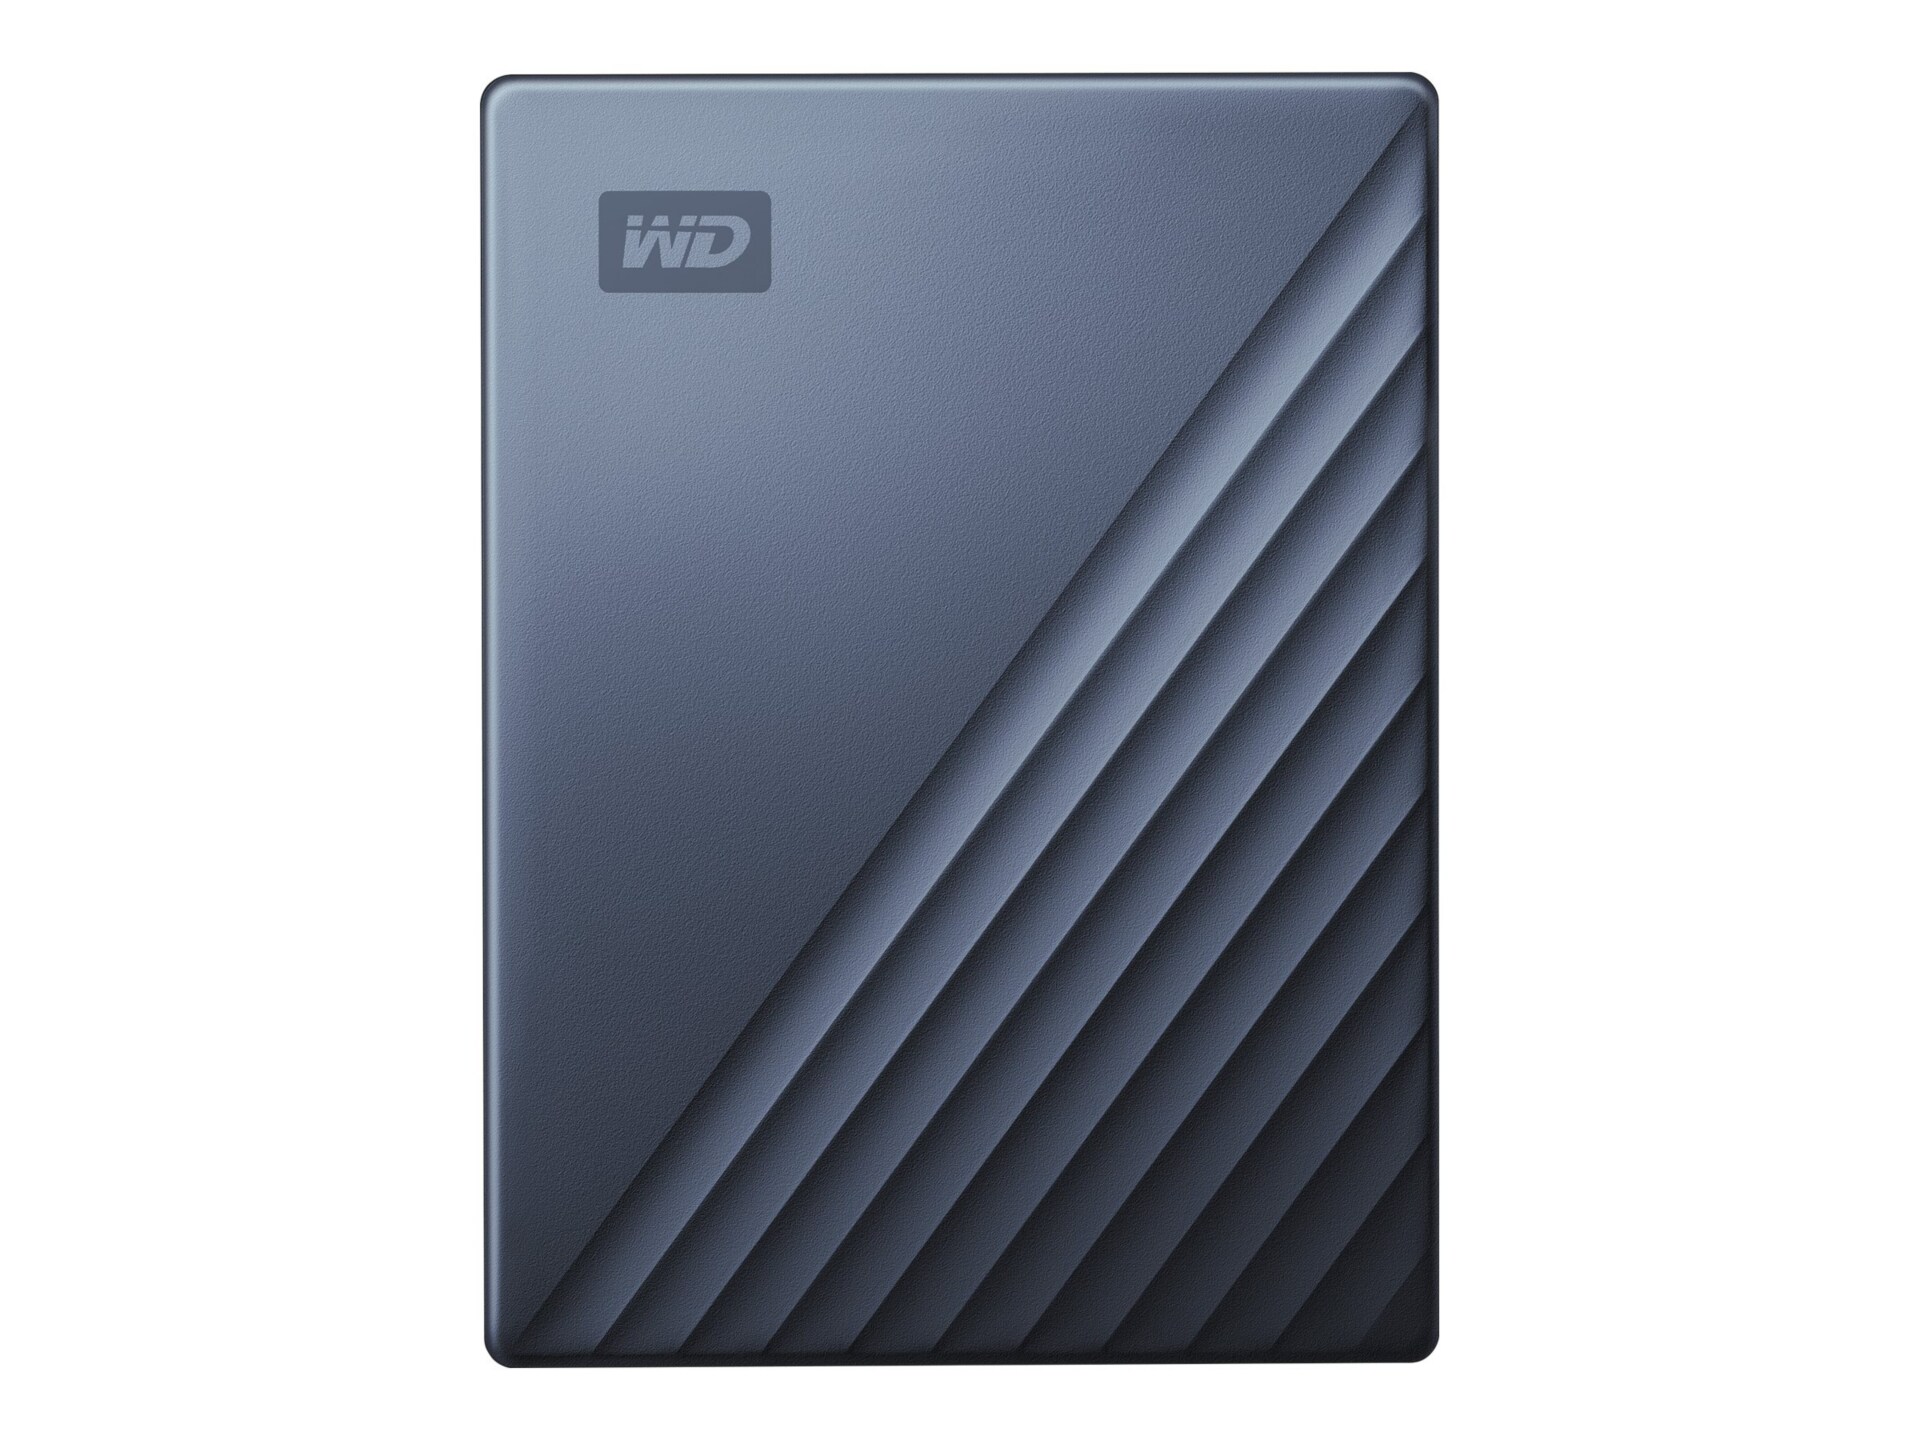 WD My Passport Ultra WDBC3C0020BBL - hard drive - 2 TB - USB 3.0